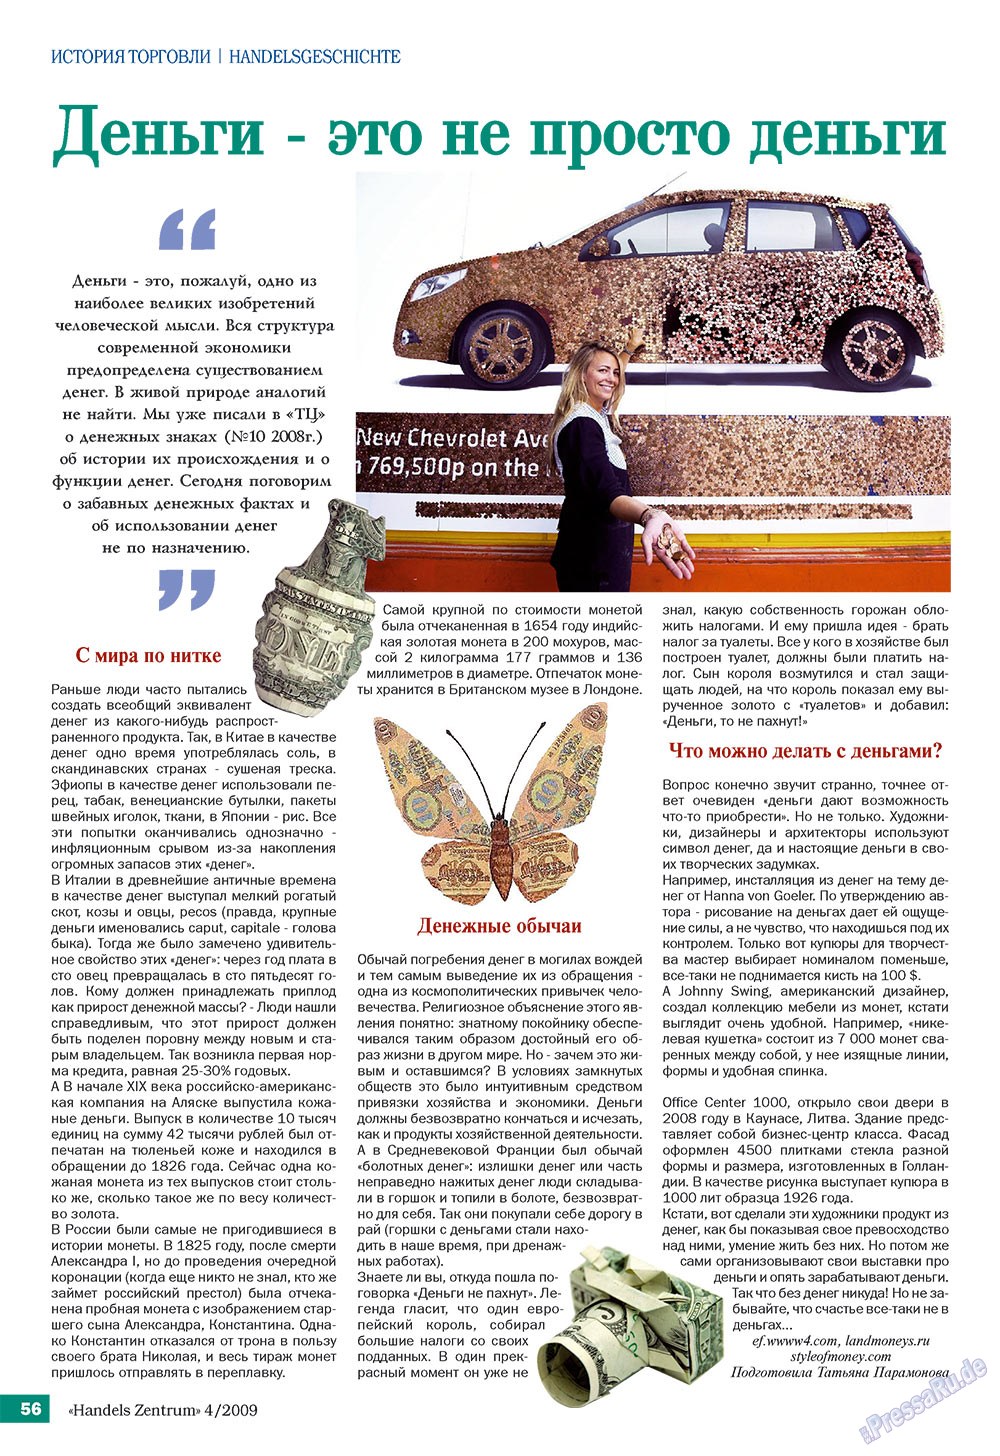 Handels Zentrum (Zeitschrift). 2009 Jahr, Ausgabe 4, Seite 56